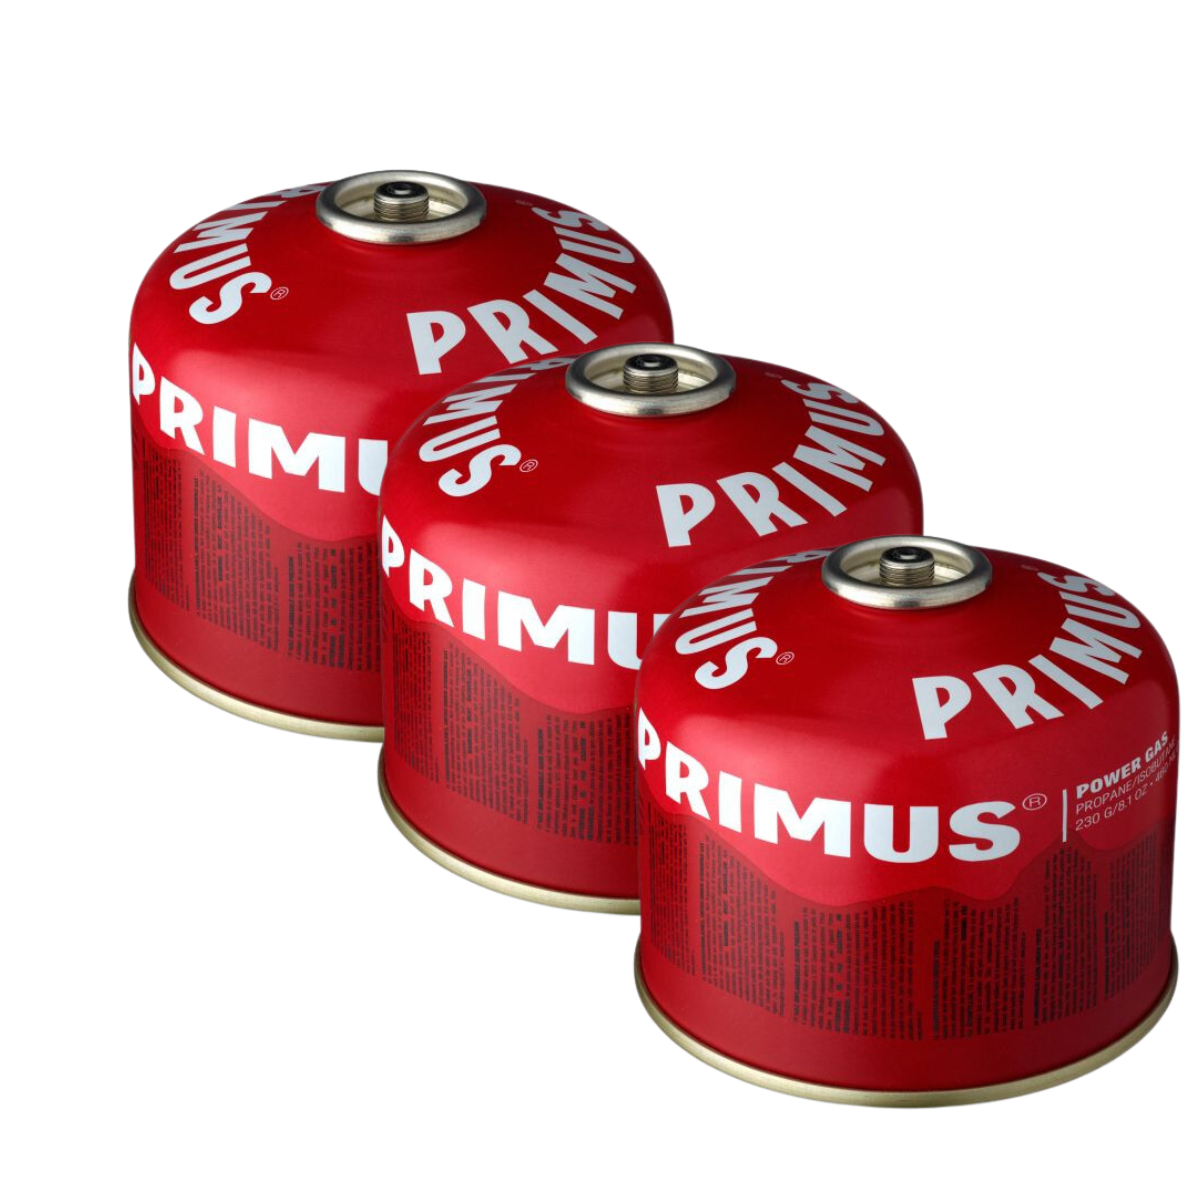 PRIMUS Schraubkartuschen Power Gas 230 g 3er-Set